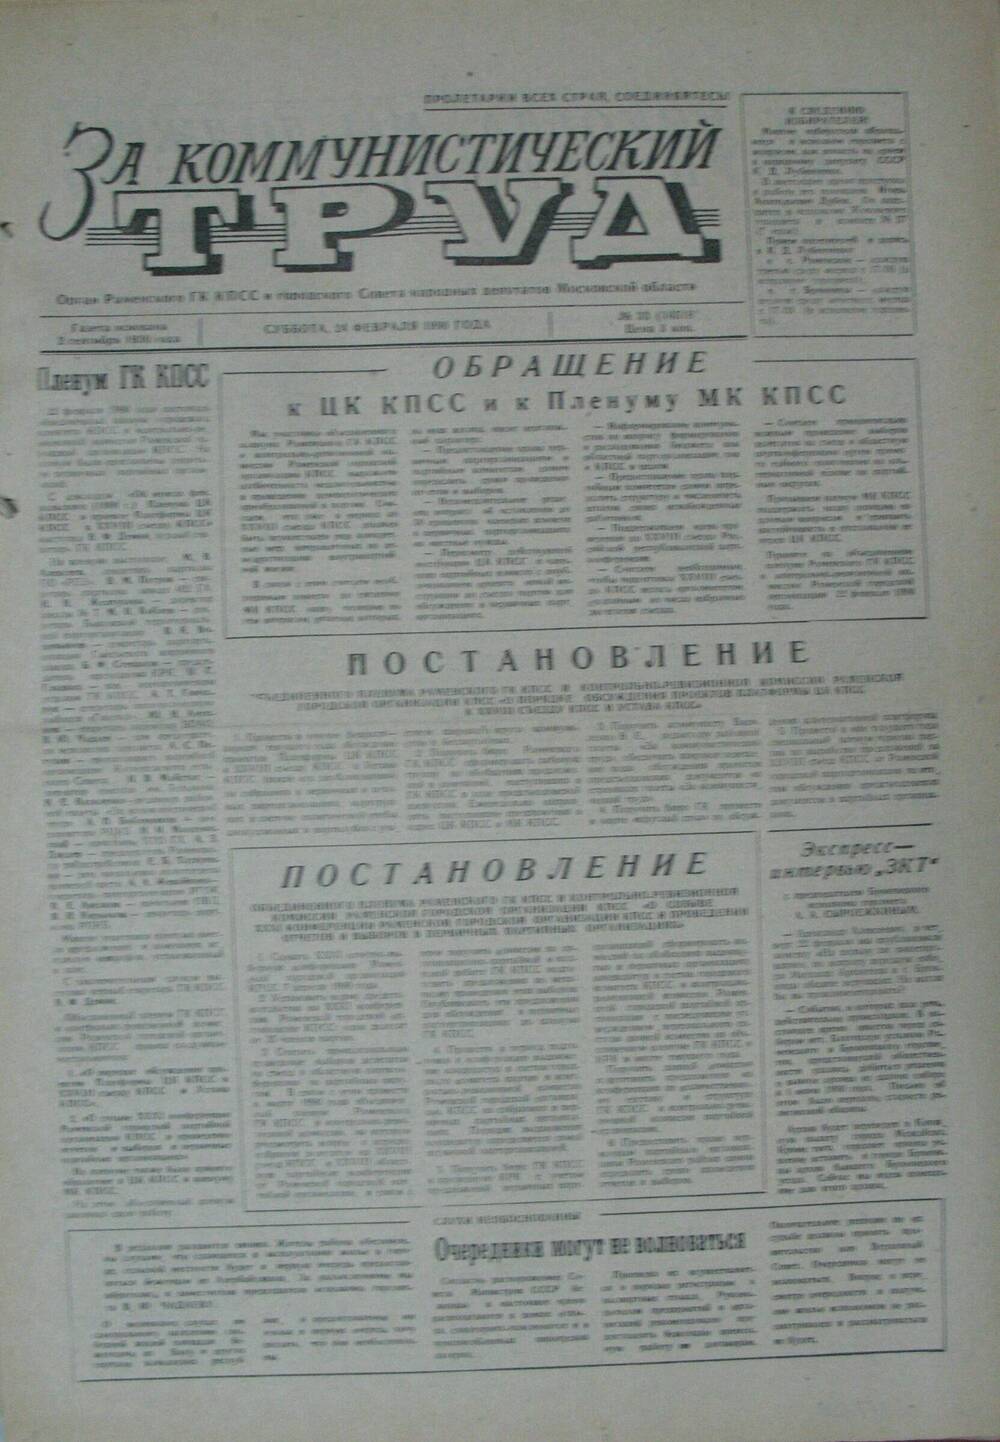 За коммунистический труд, газета № 33 от 24 февраля 1990г